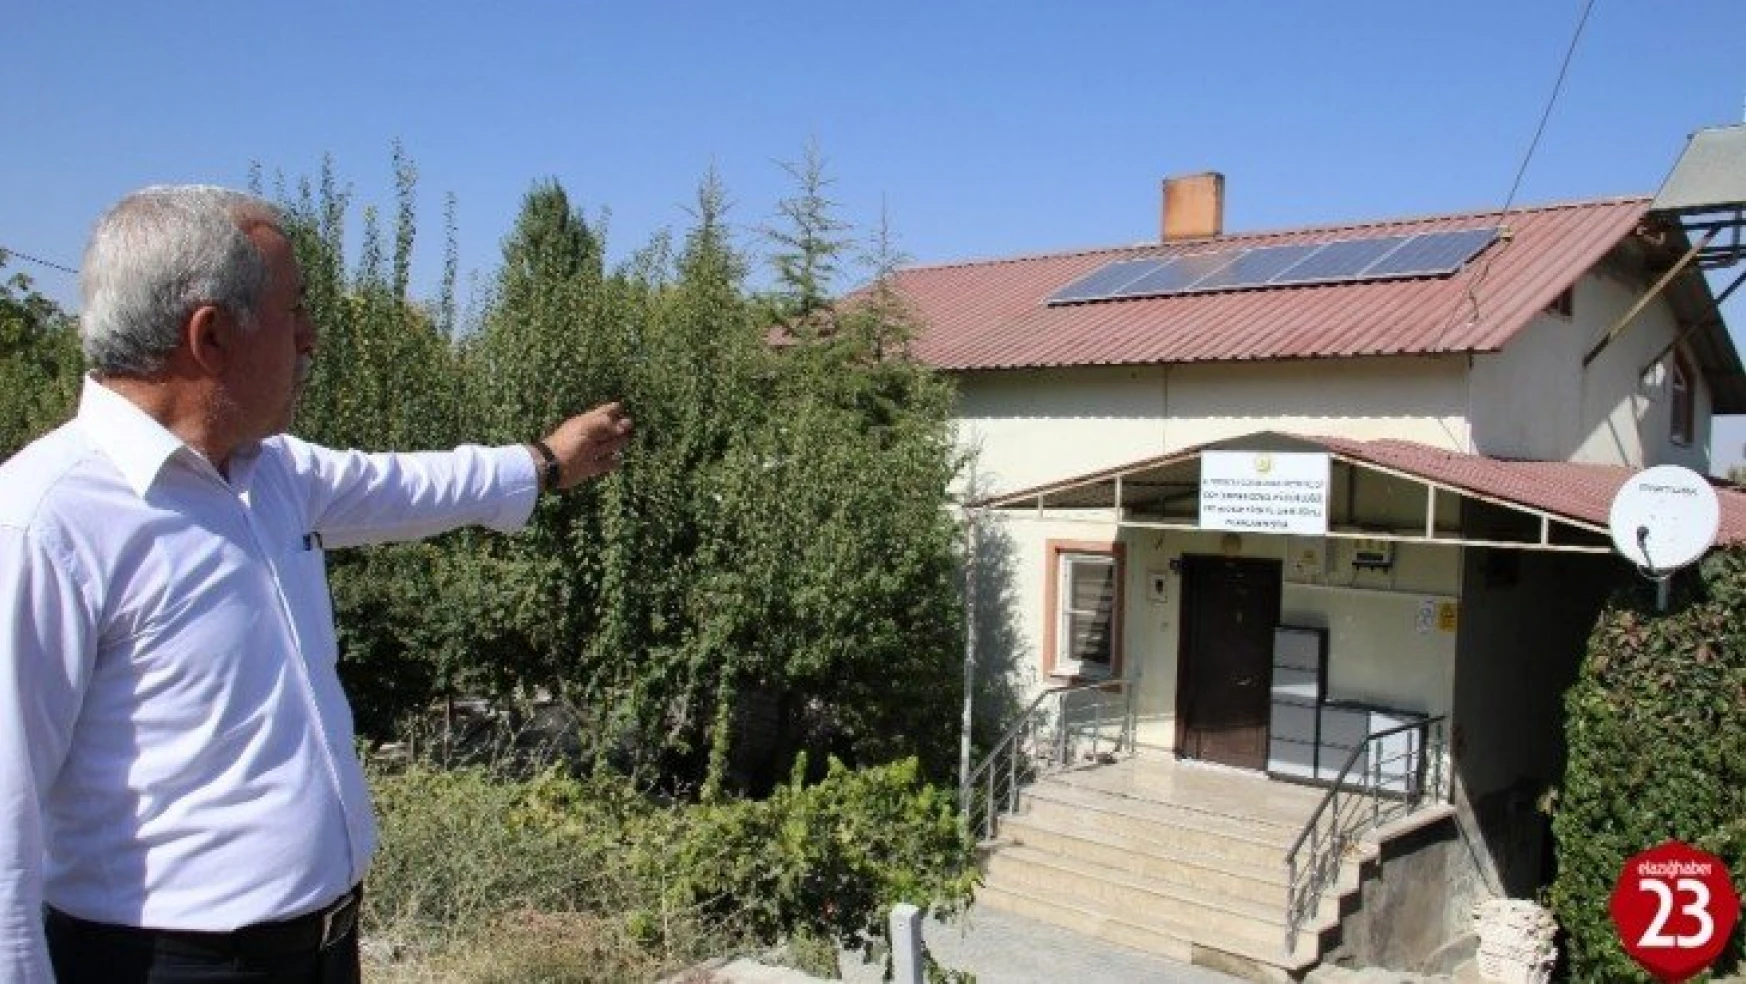 Elazığ'da 2 köyde çatılara kuruldu, artık kendi elektriklerini üretecekler